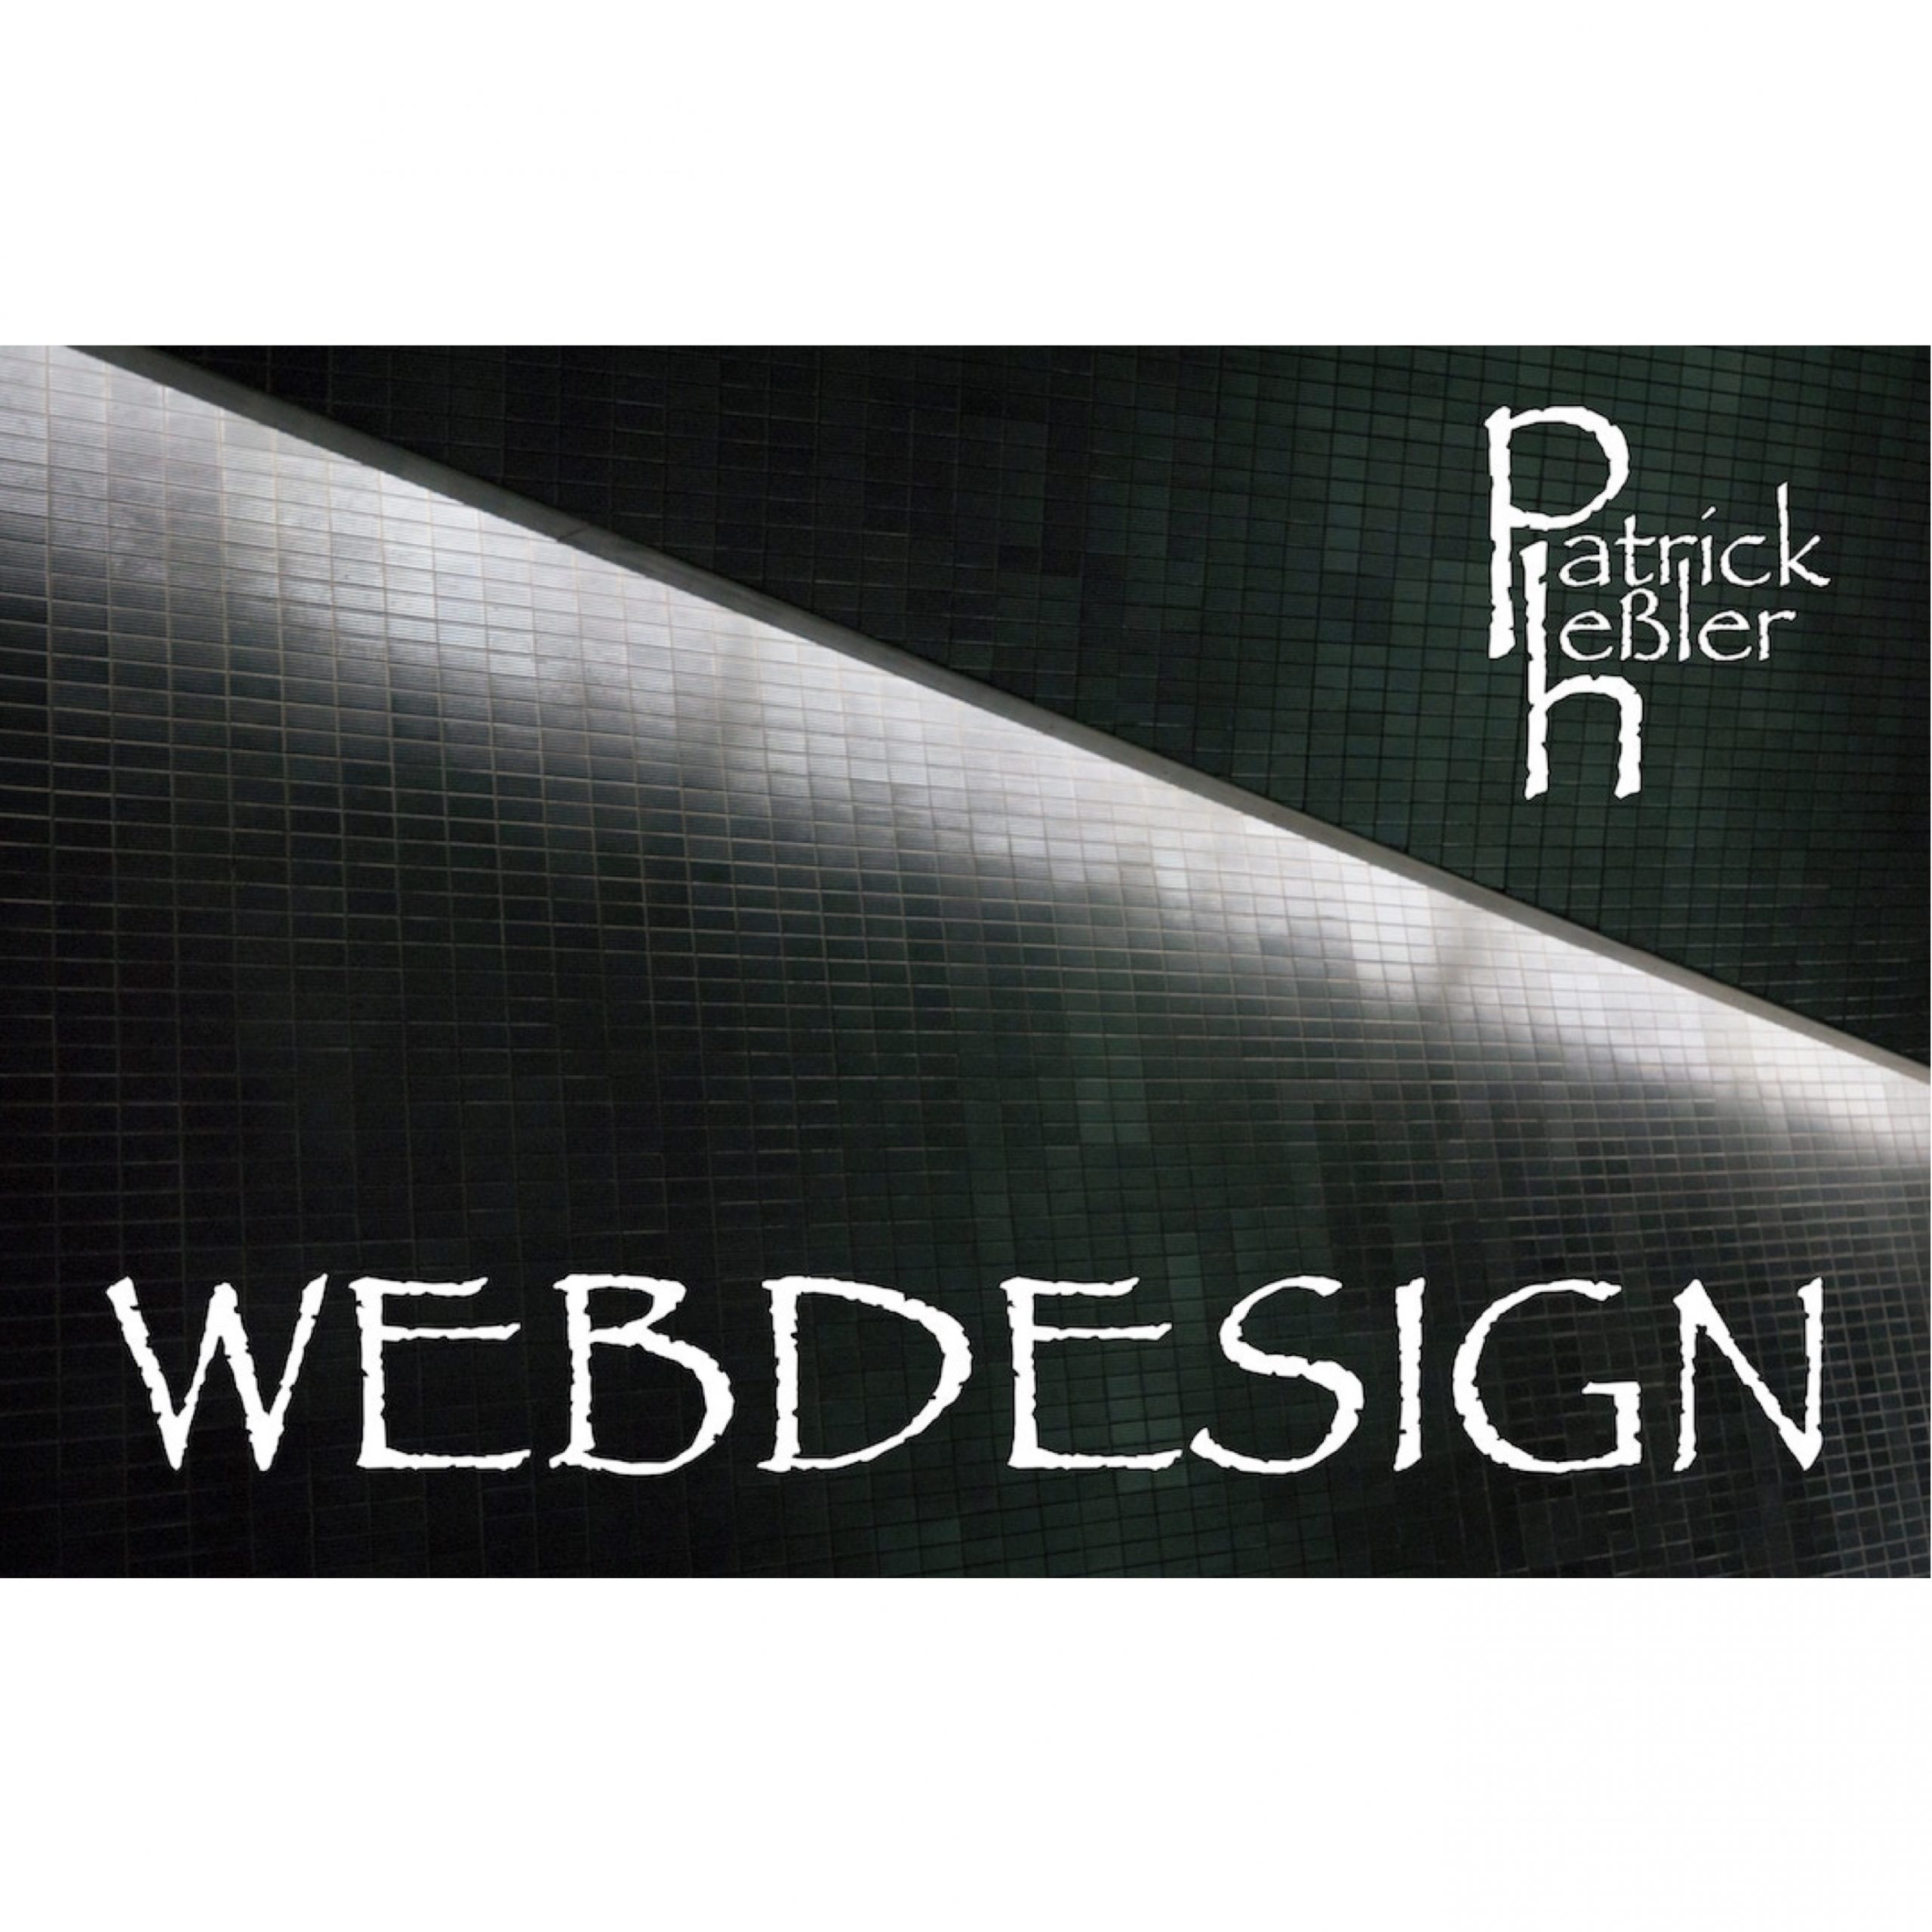 ph webdesign02 scaled